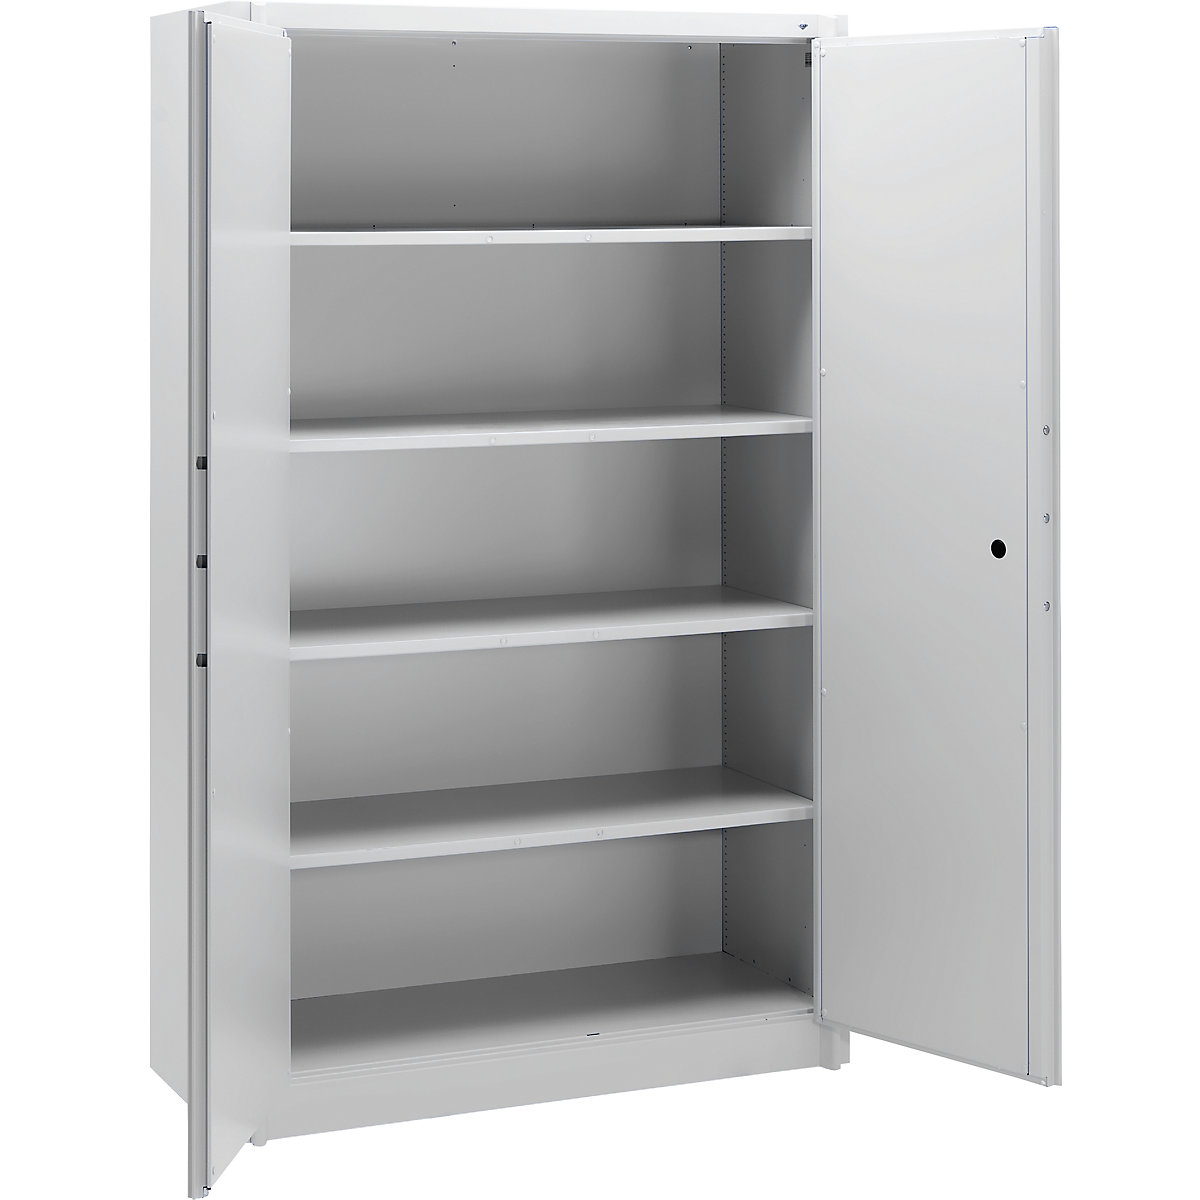 Steel cupboard, fireproof – C+P, DIN 4102 compliant, HxWxD 1950 x 1200 x 500 mm, light grey-6